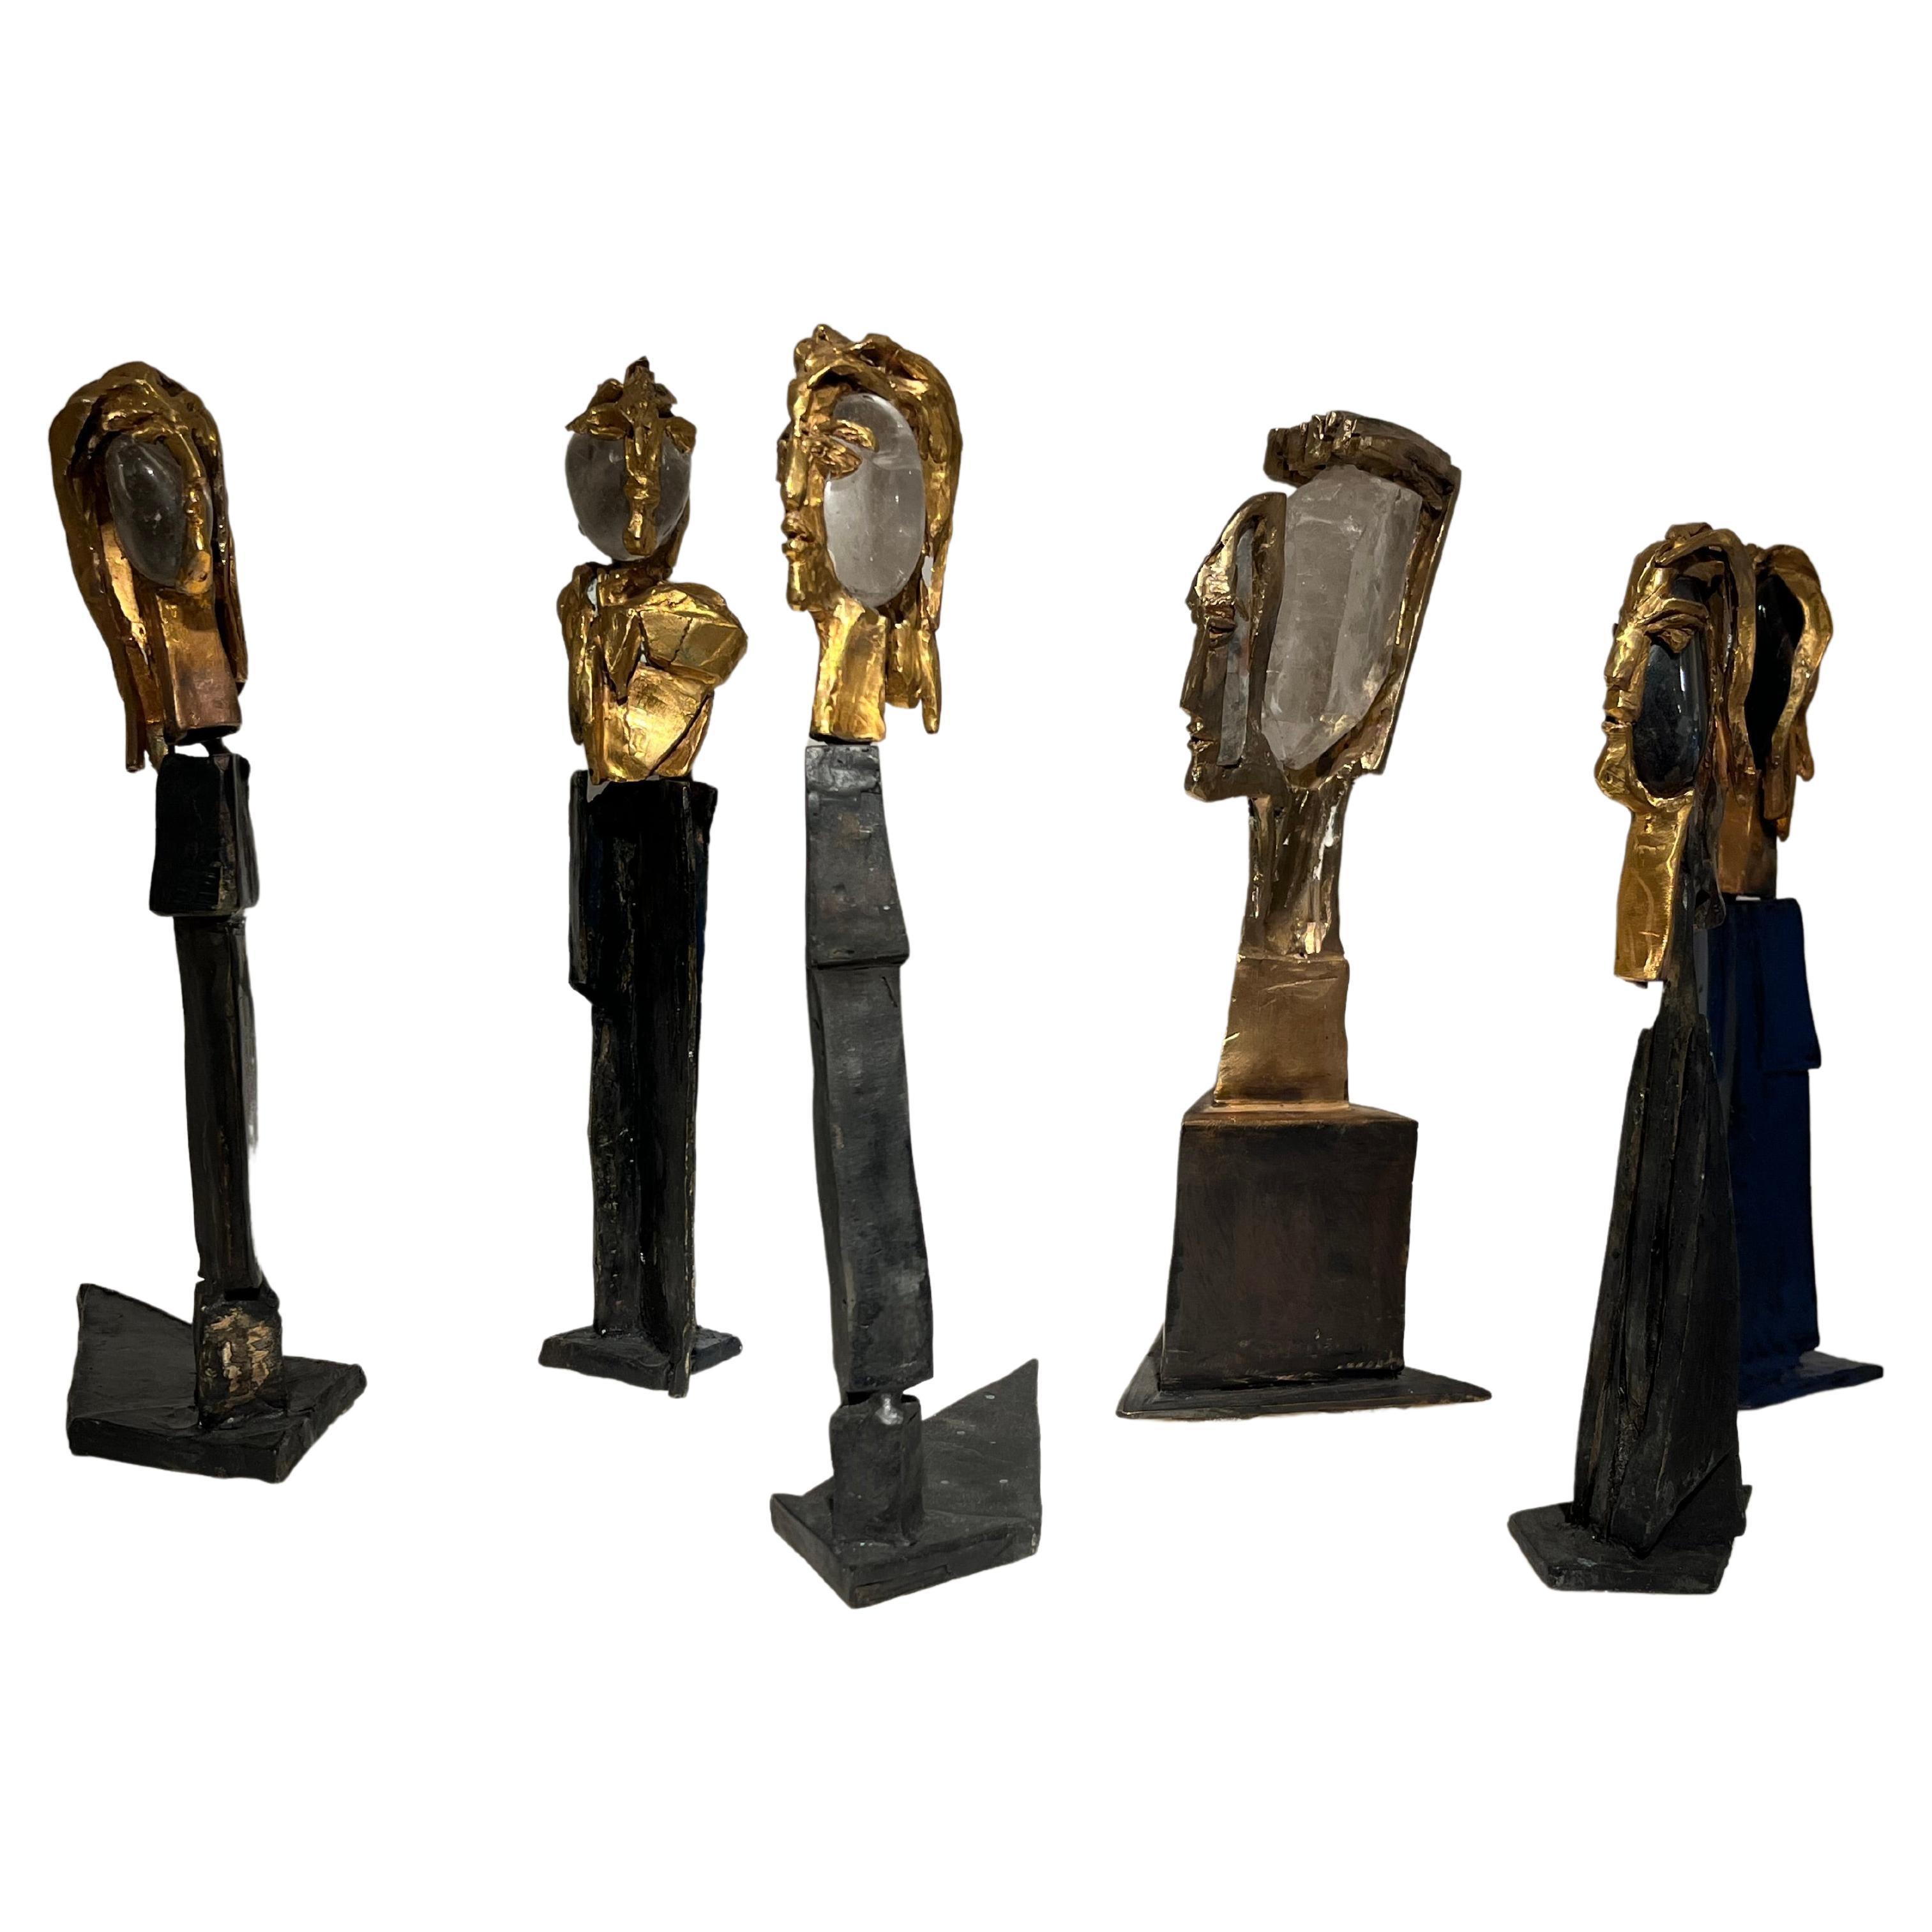 Sculptures by Anna Stein